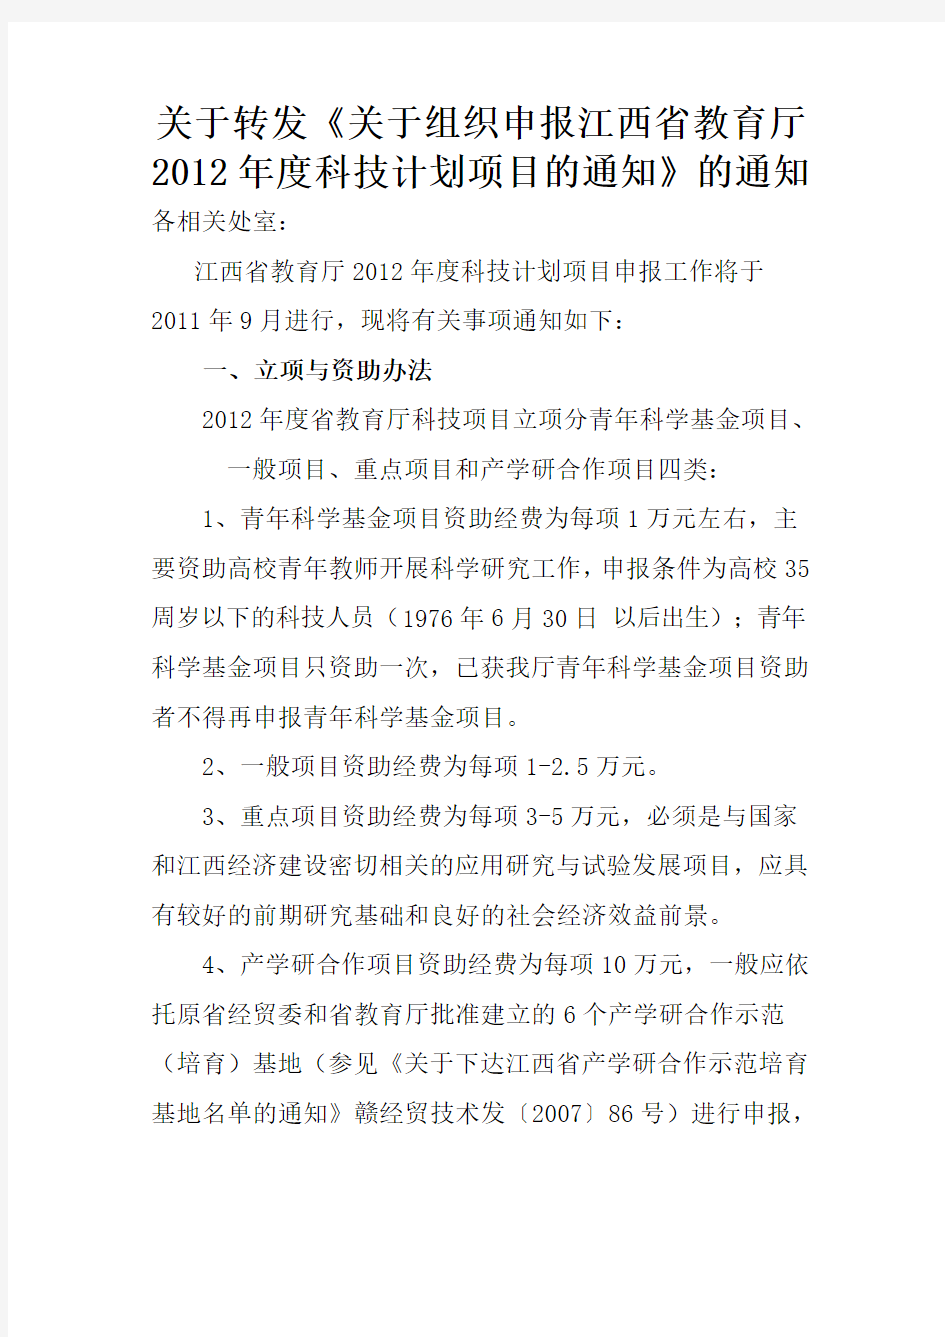 关于转发《关于组织申报江西省教育厅2012年度科技计划项目的通知》的通知